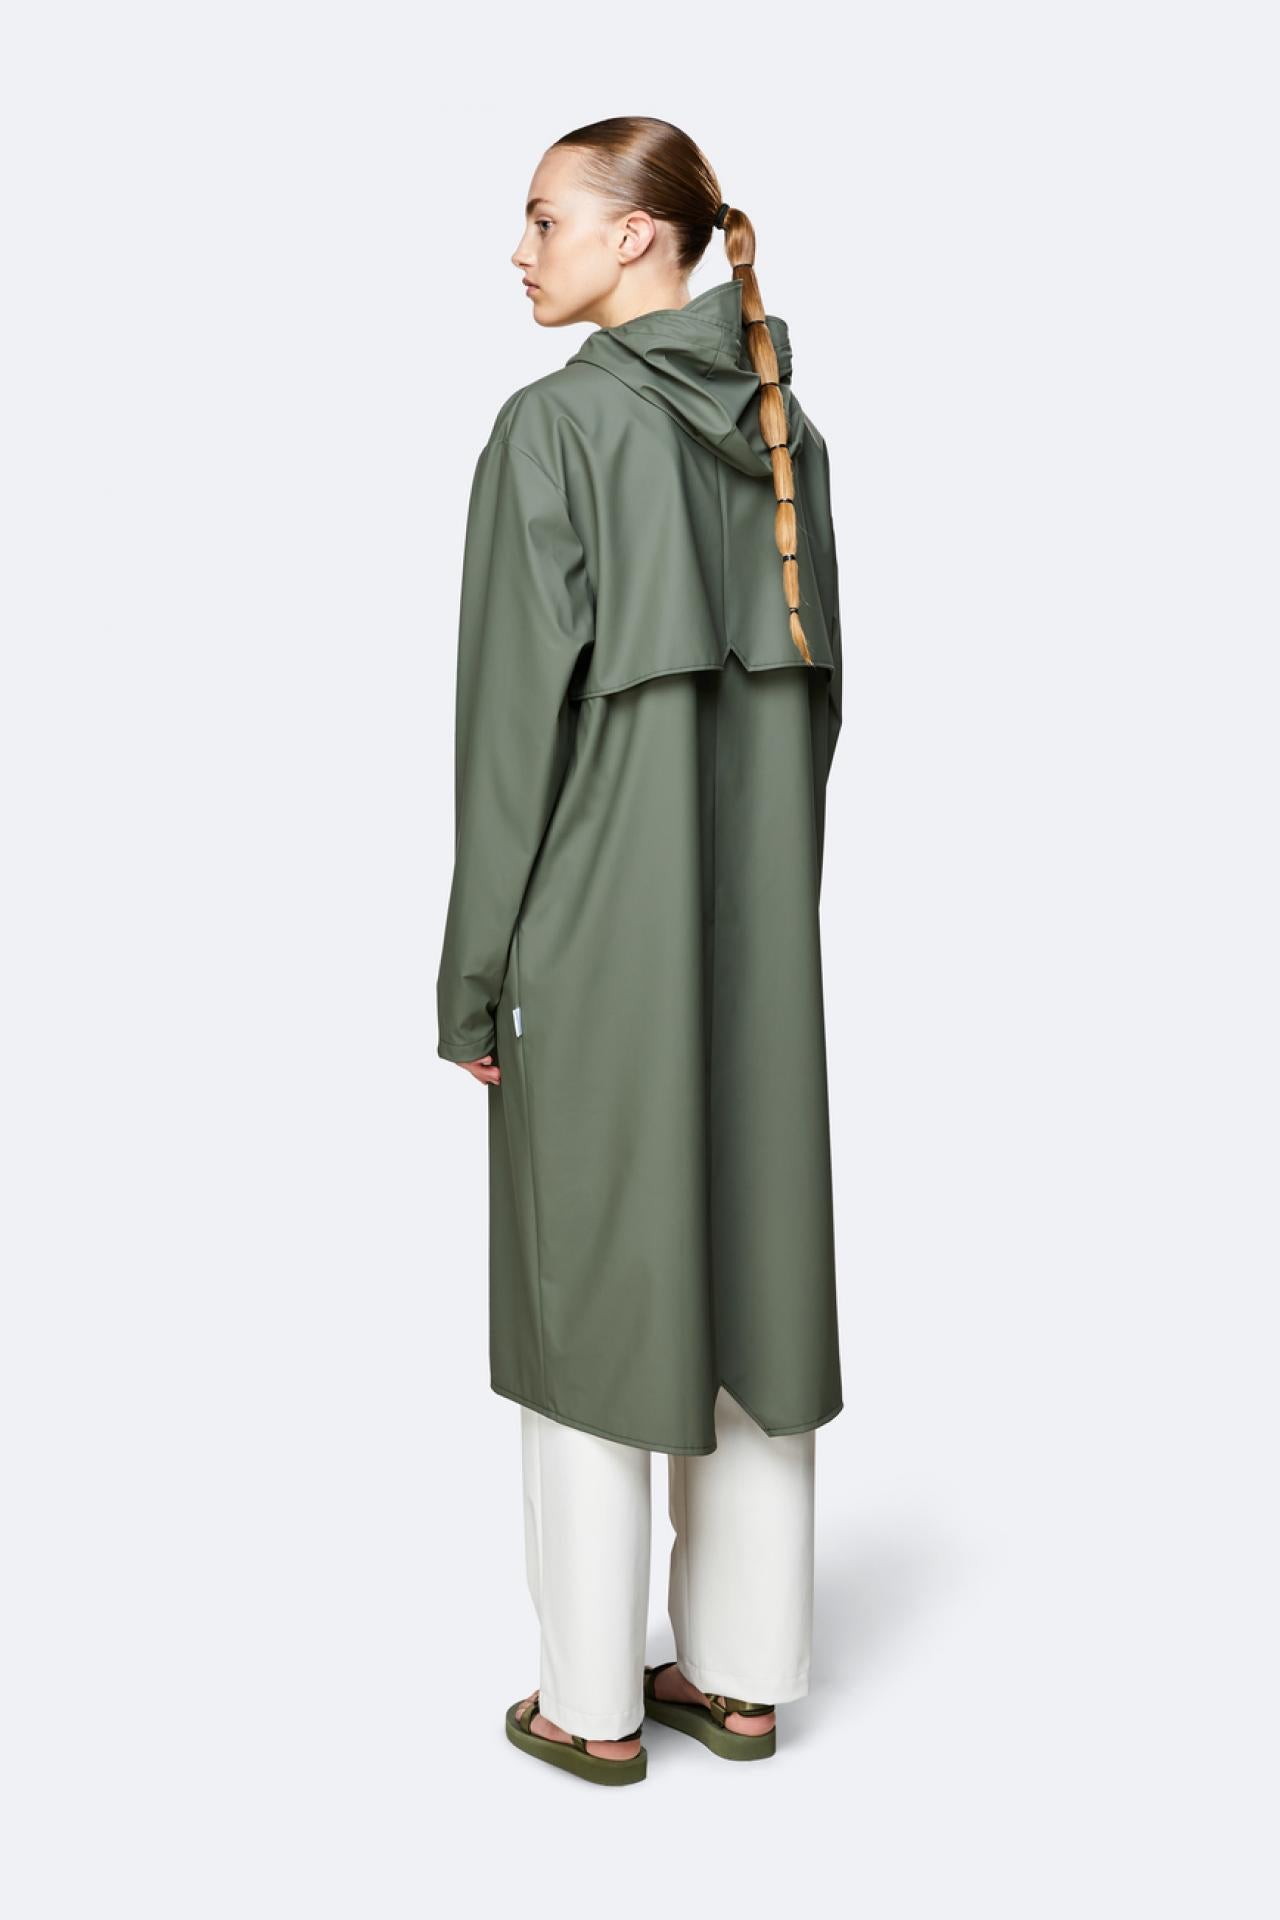 Rains Regenjacke Longer Jacket 1836 Olive - Größe: L/XL